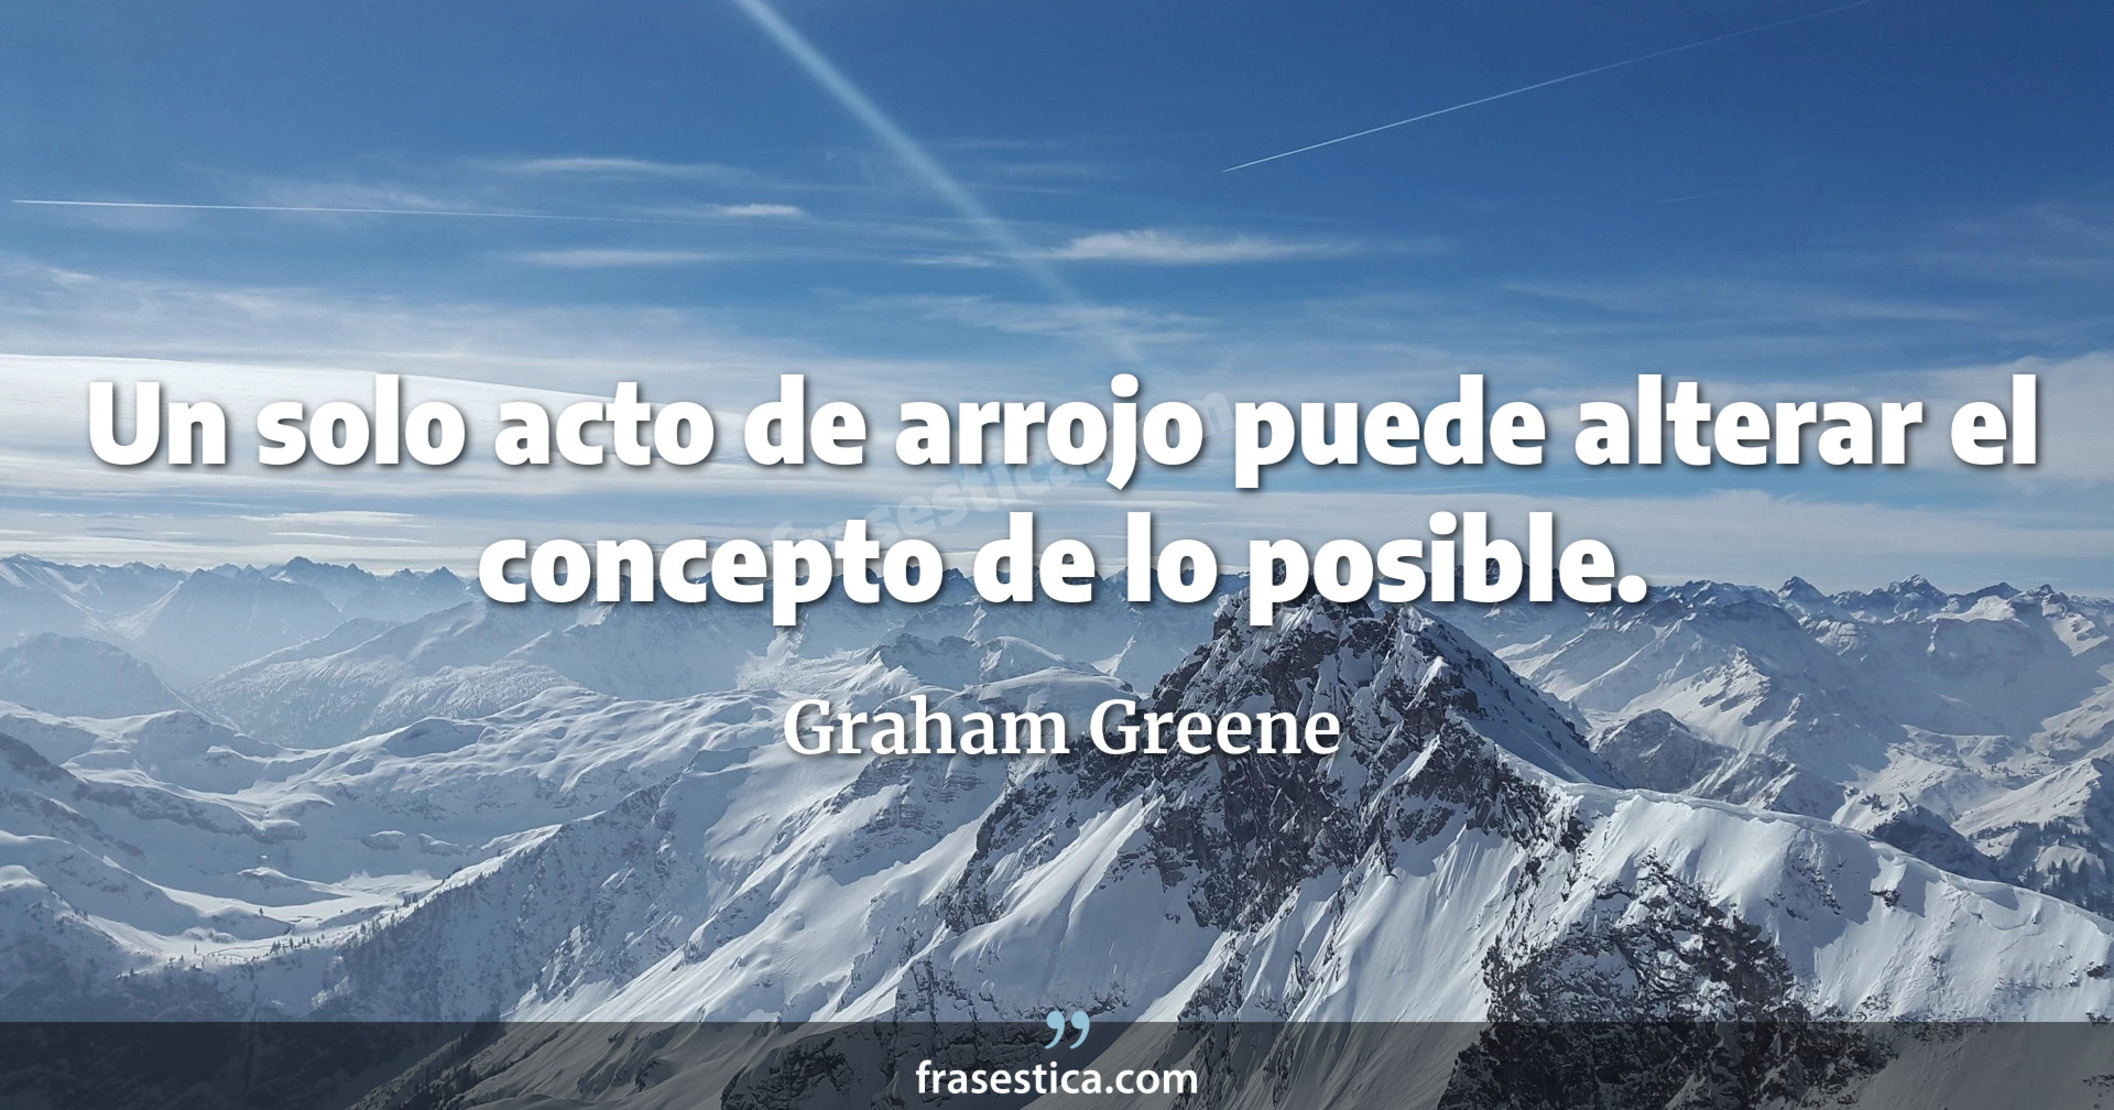 Un solo acto de arrojo puede alterar el concepto de lo posible. - Graham Greene